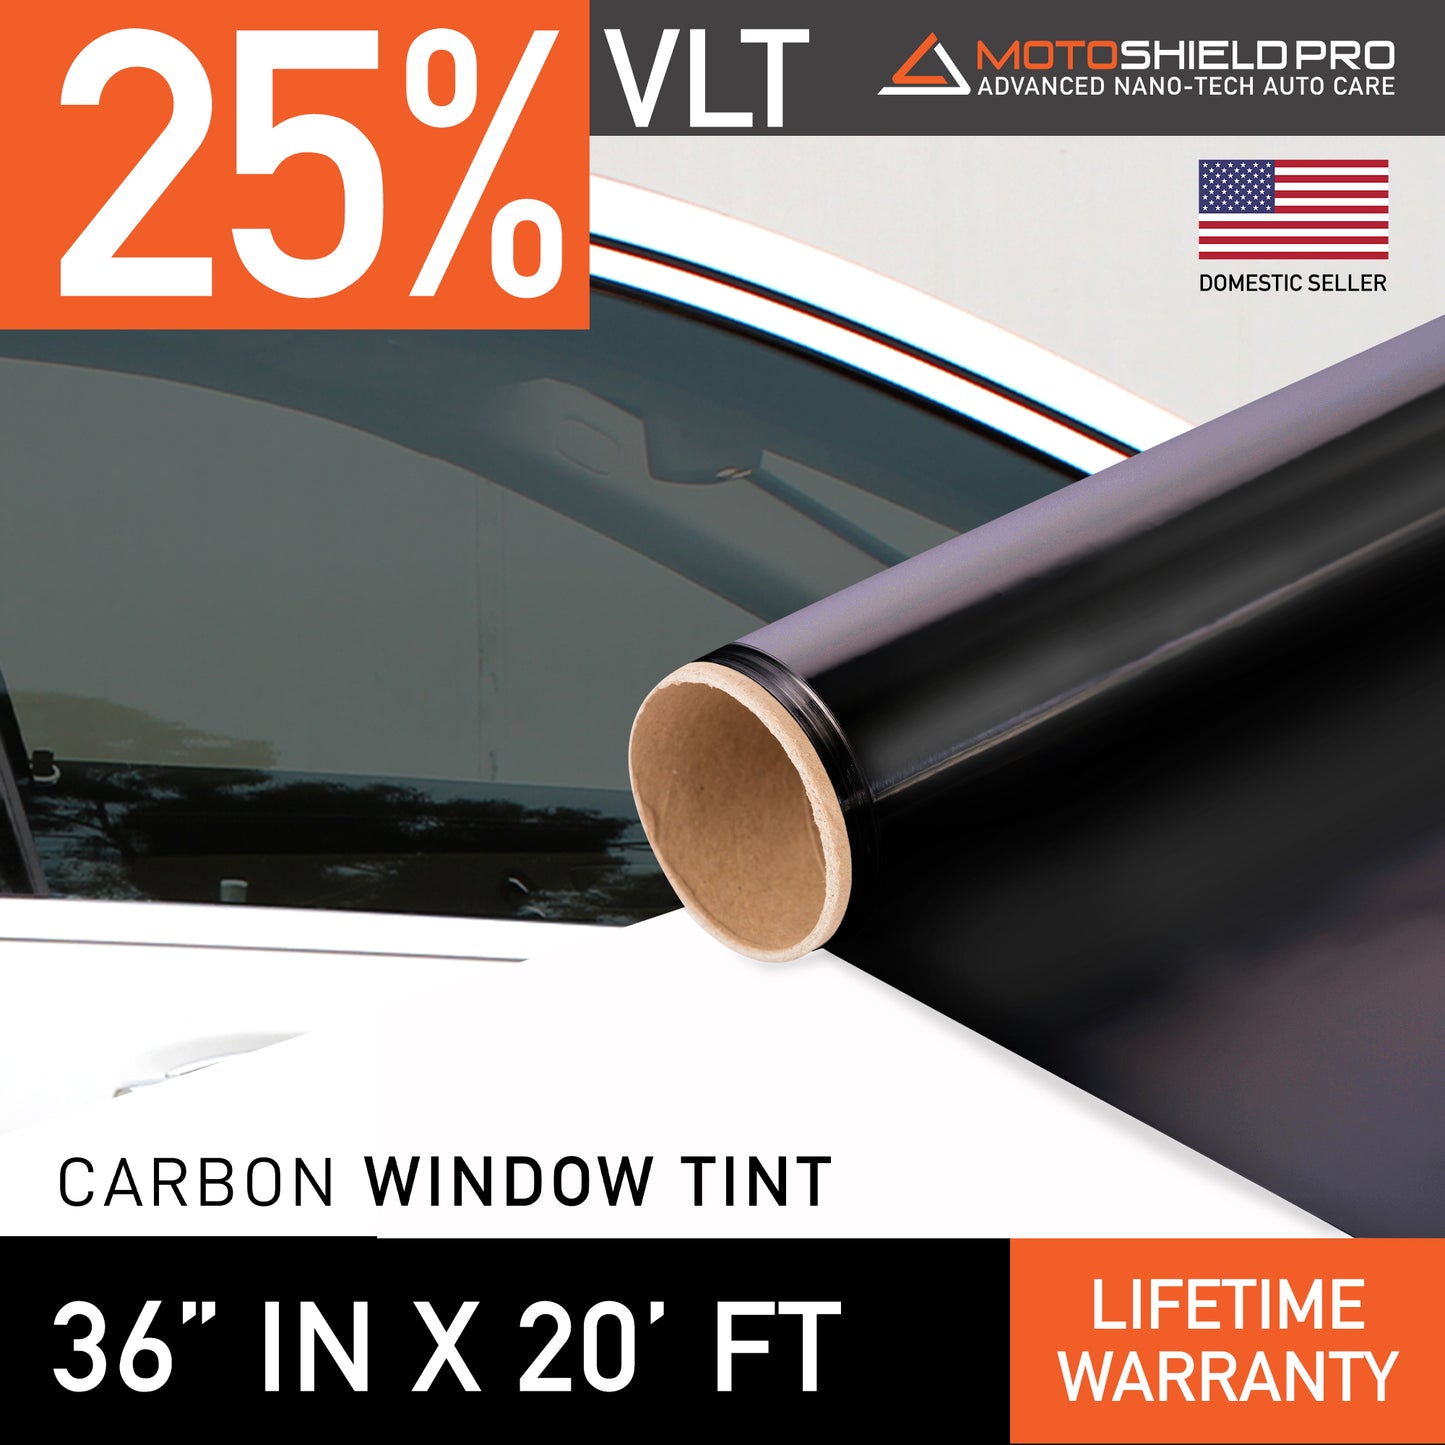 MotoShield Pro Carbon Window Tint - 36" in x 20' ft Roll + Lifetime Warranty